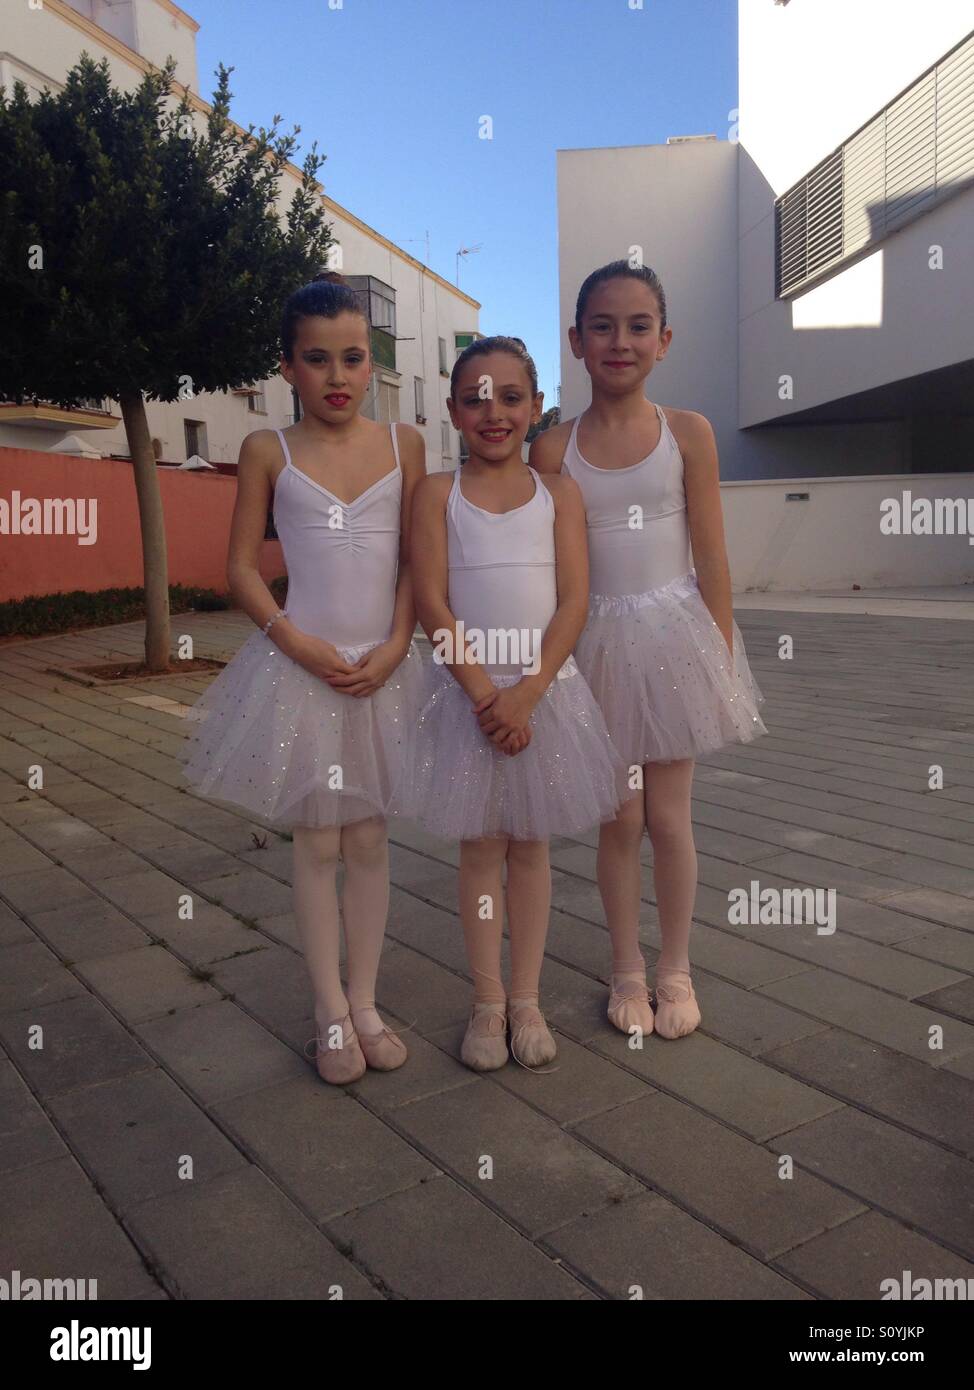 Ballerina white tutu girls children happy show Stock Photo